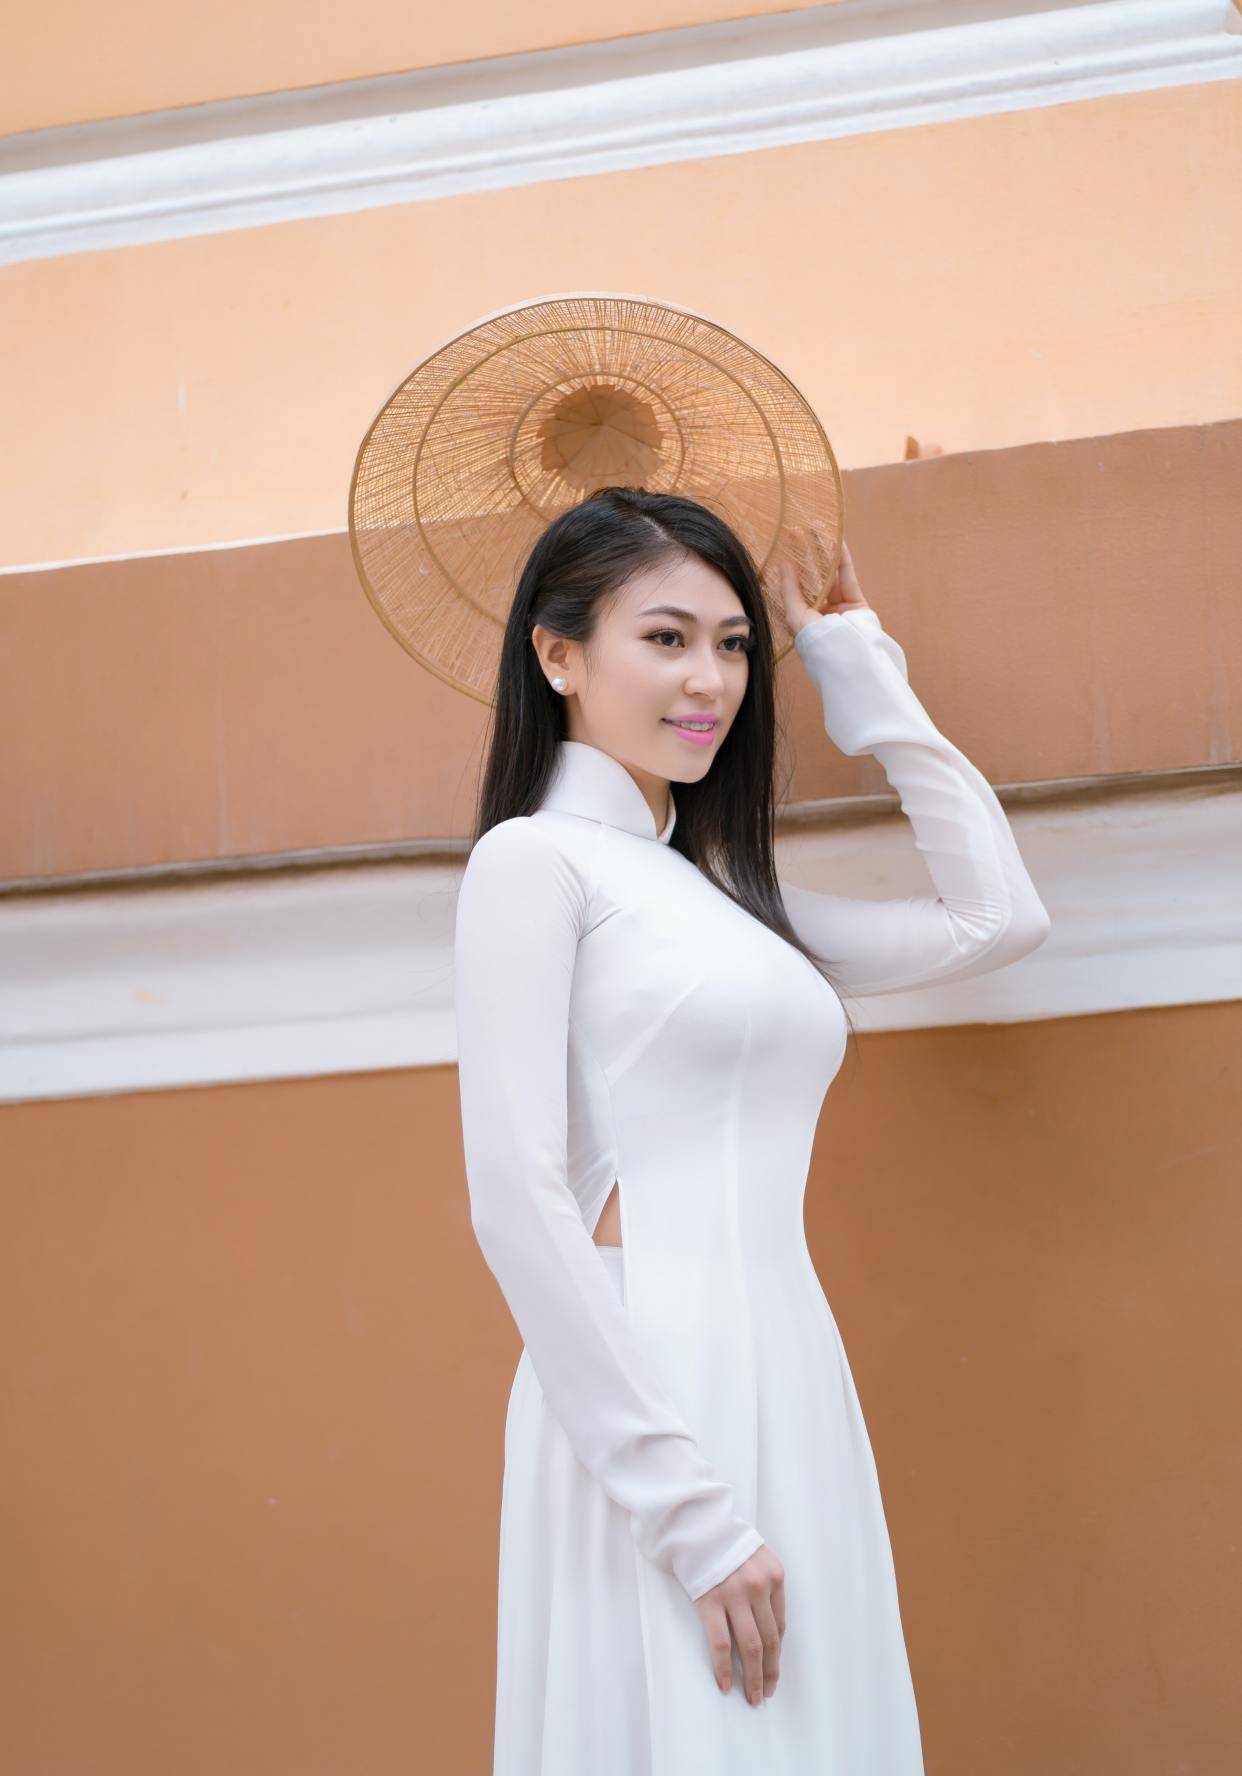 气质型越南美女穿搭奥黛服显身材散发着独特的魅力